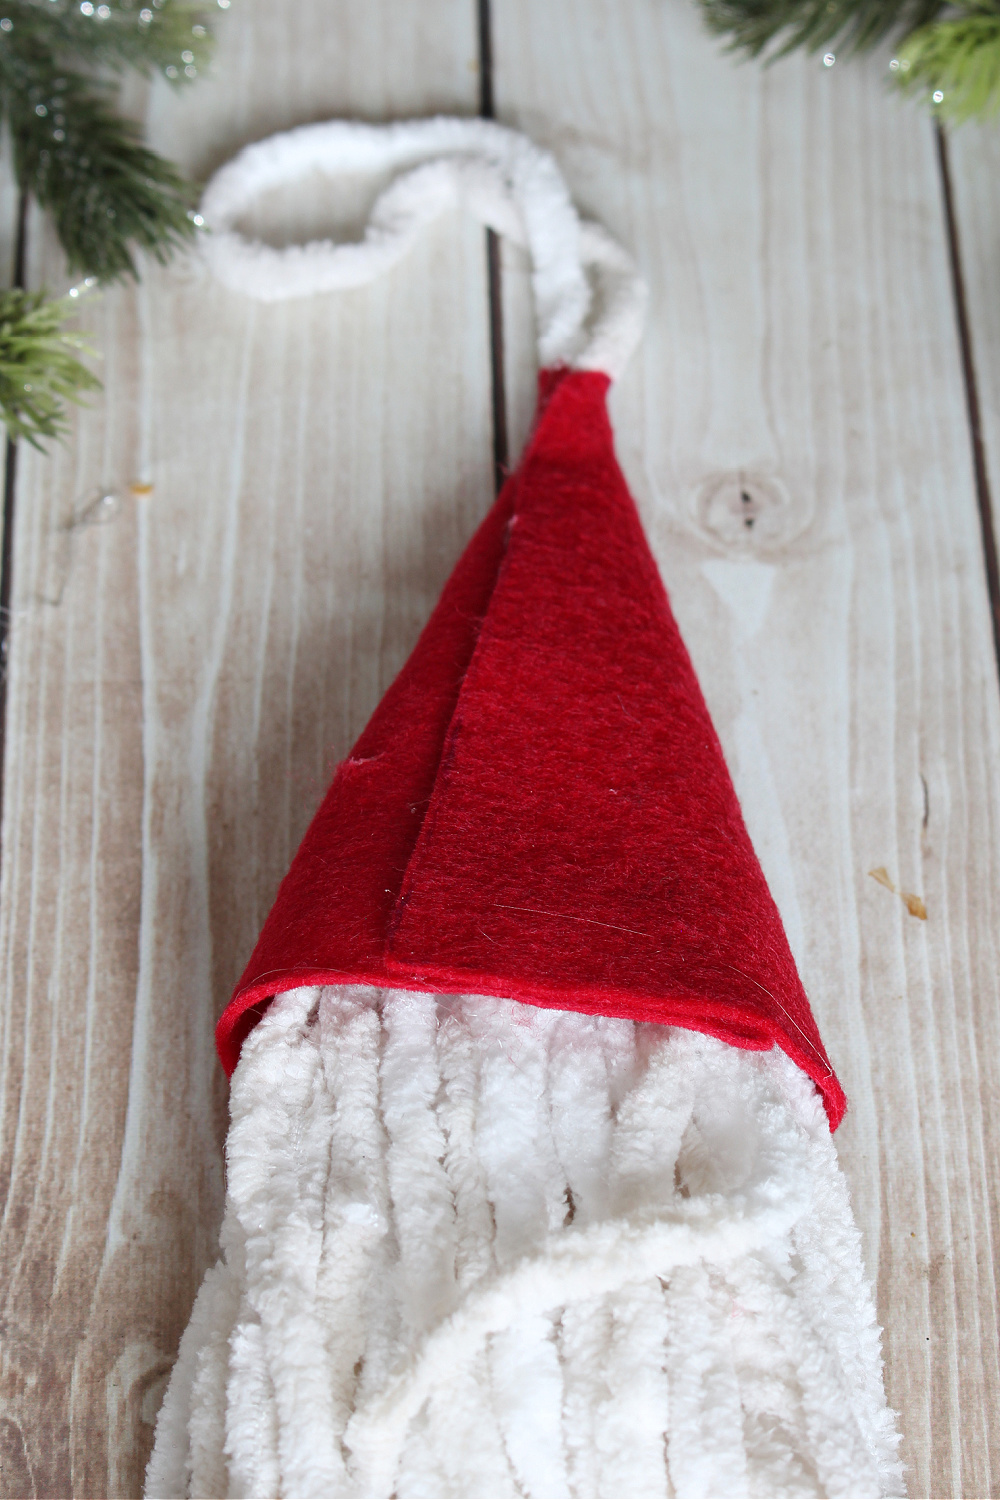 DIY Santa gnome ornament step by step tutorial.